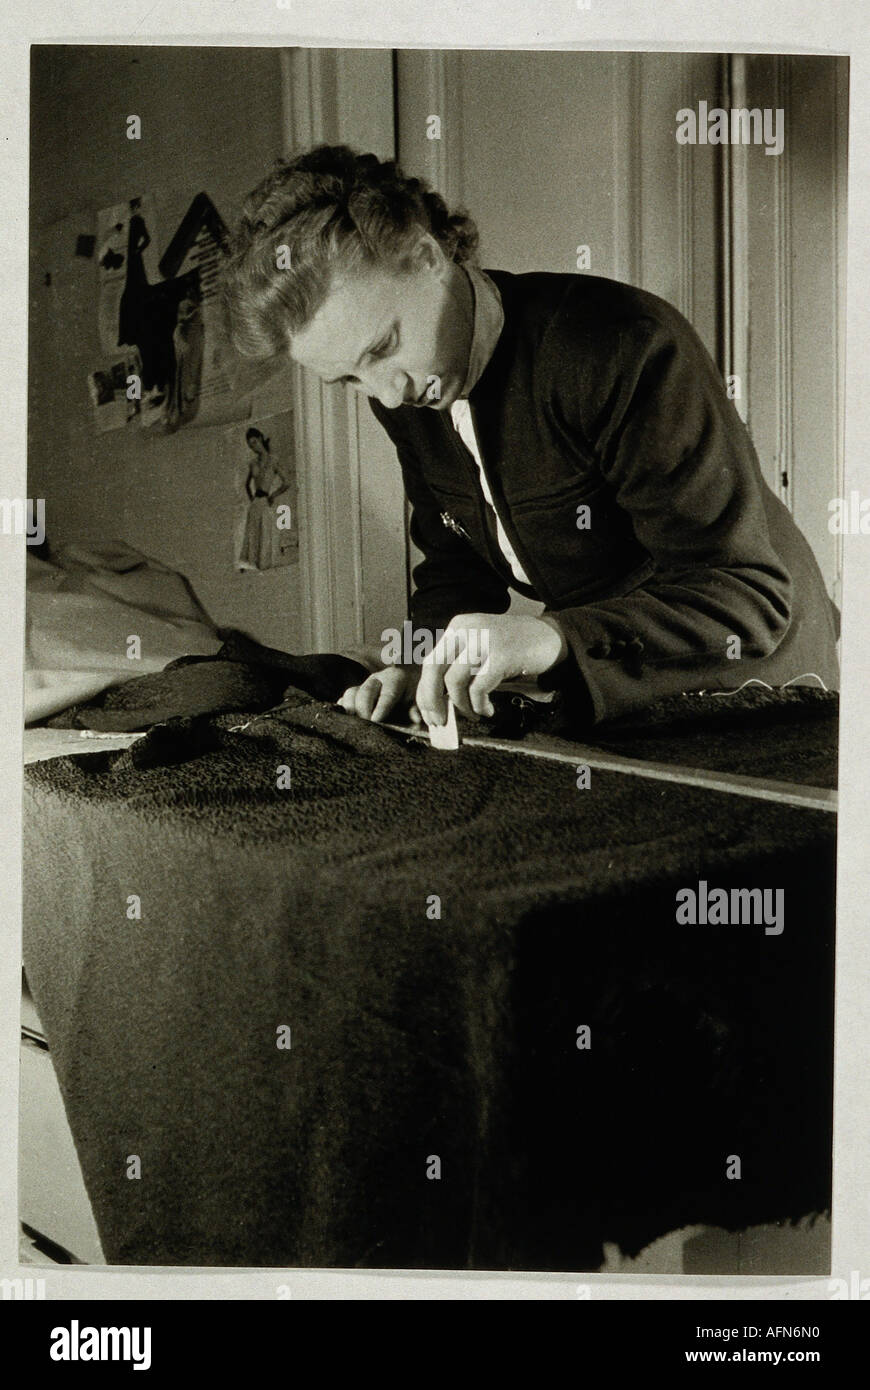 Gente, profesión, sastre, marcar con tiza,Alemania, 1948, moda, era de la posguerra, , Foto de stock